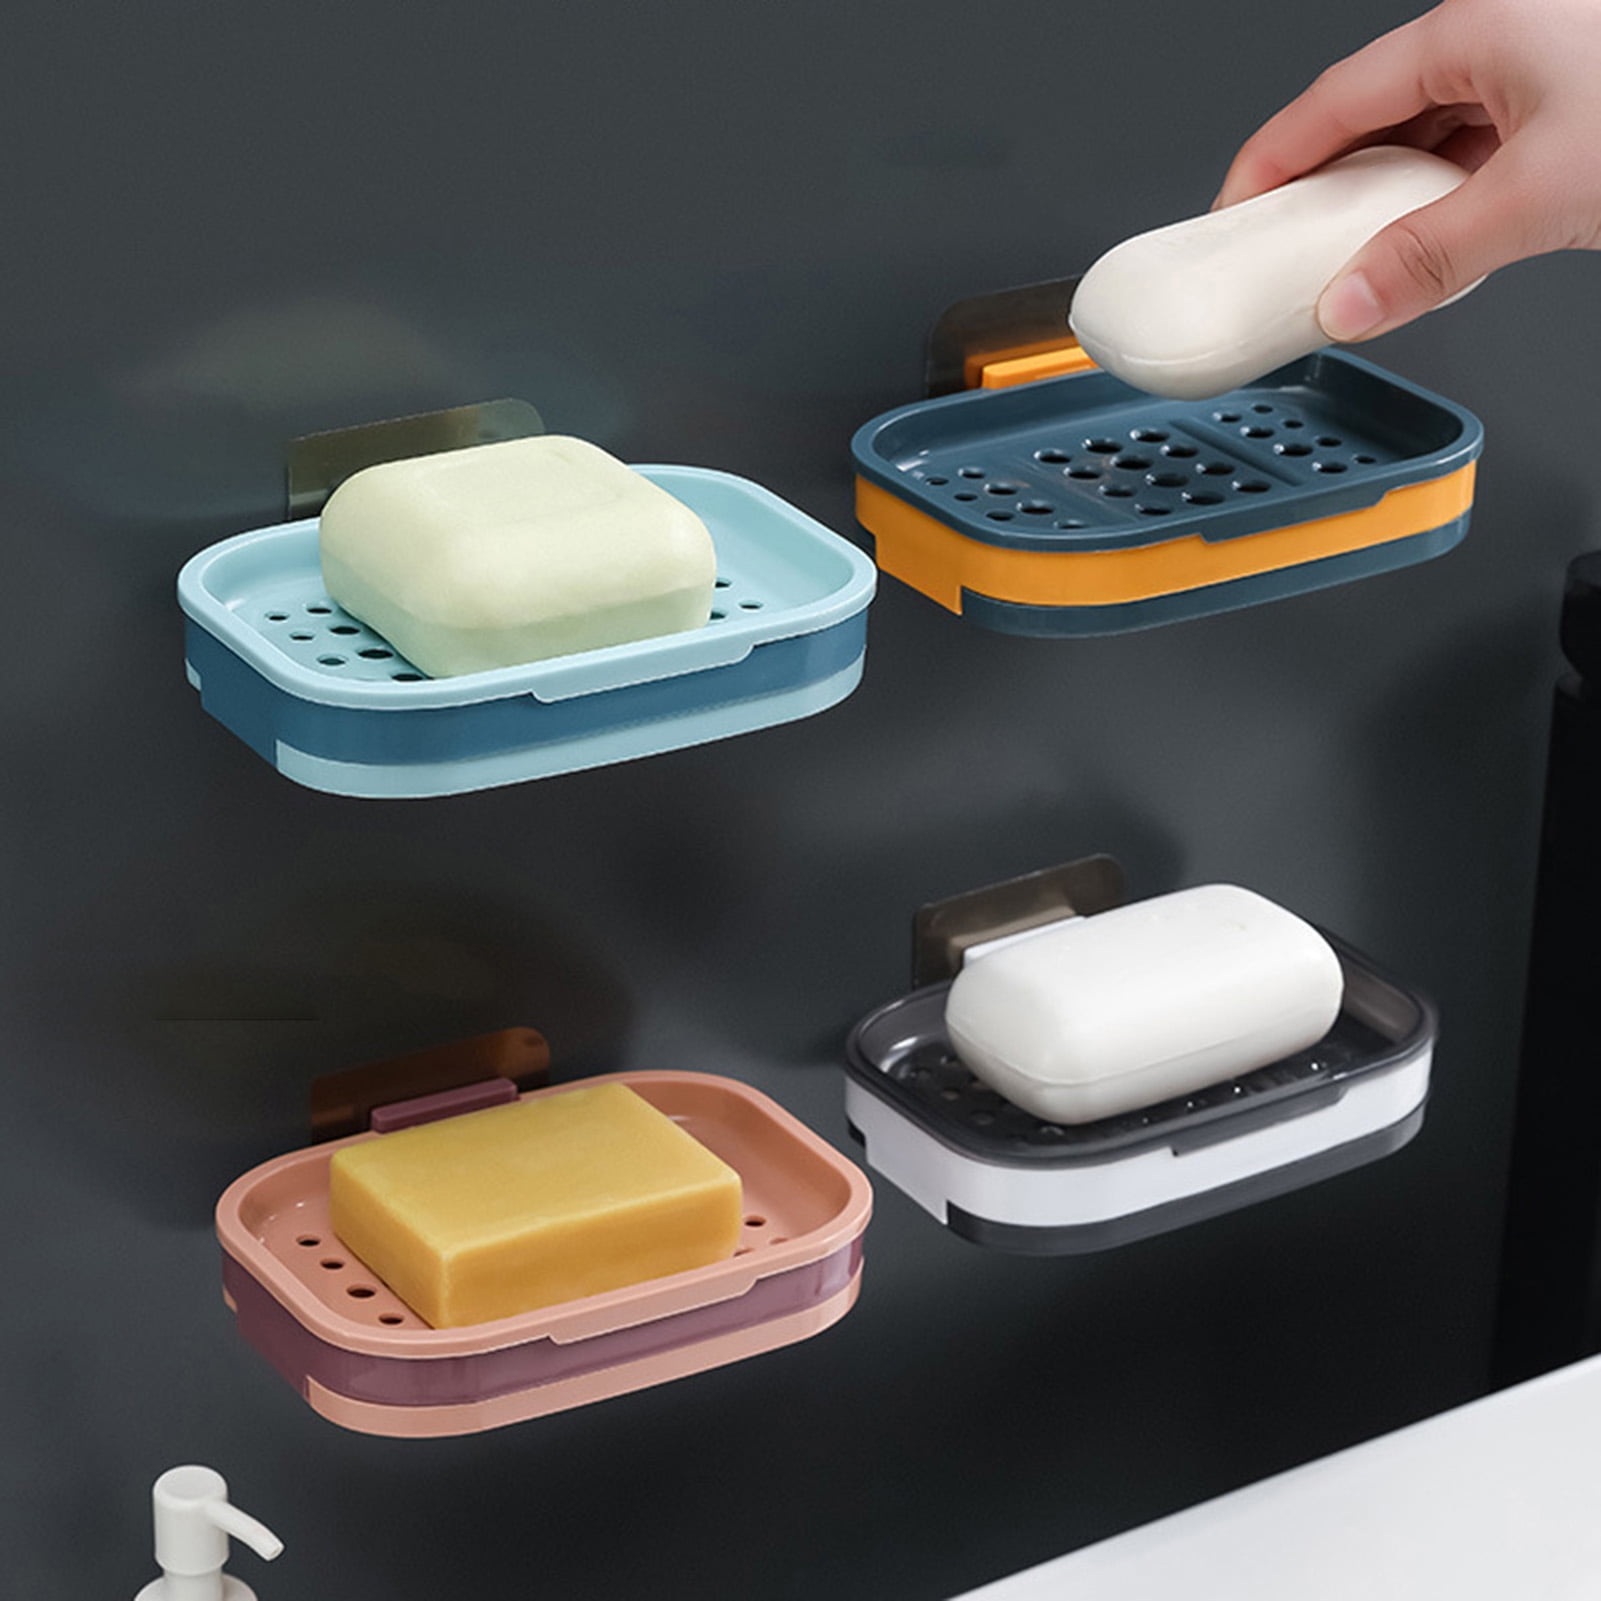 SWAMTIK Soap Dish for Shower Waterproof Shower Soap Holder Heavy Duty Soap Dish Moisture-proof Bar Soap Holder No Drilling Soap Holder for Shower Wall